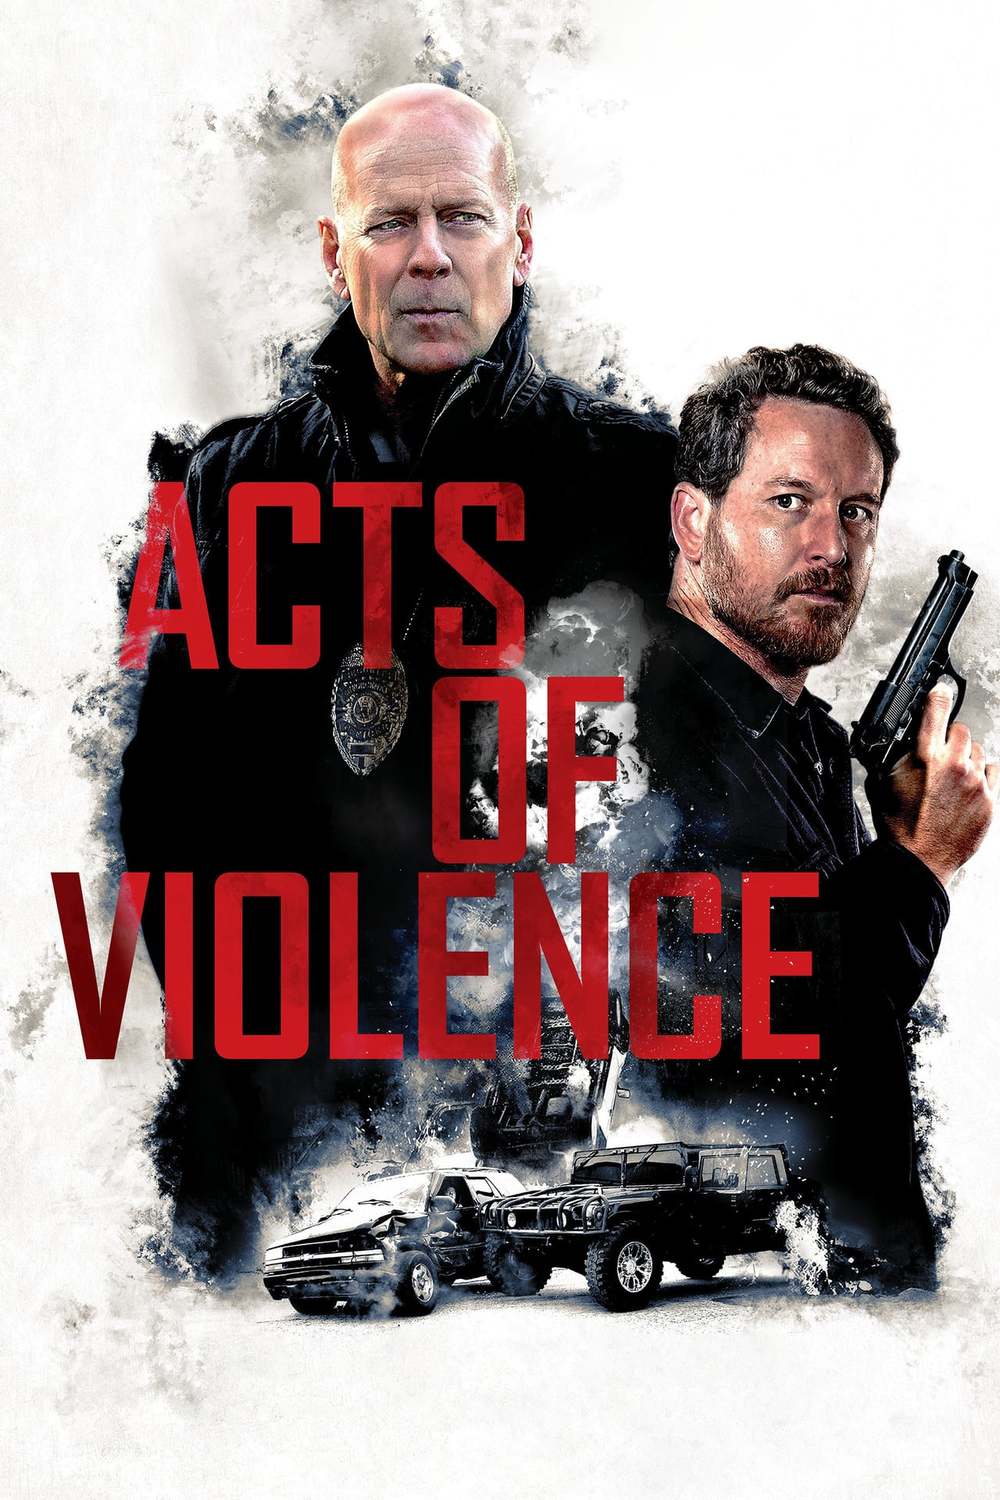 Acts of Violence | Fandíme filmu